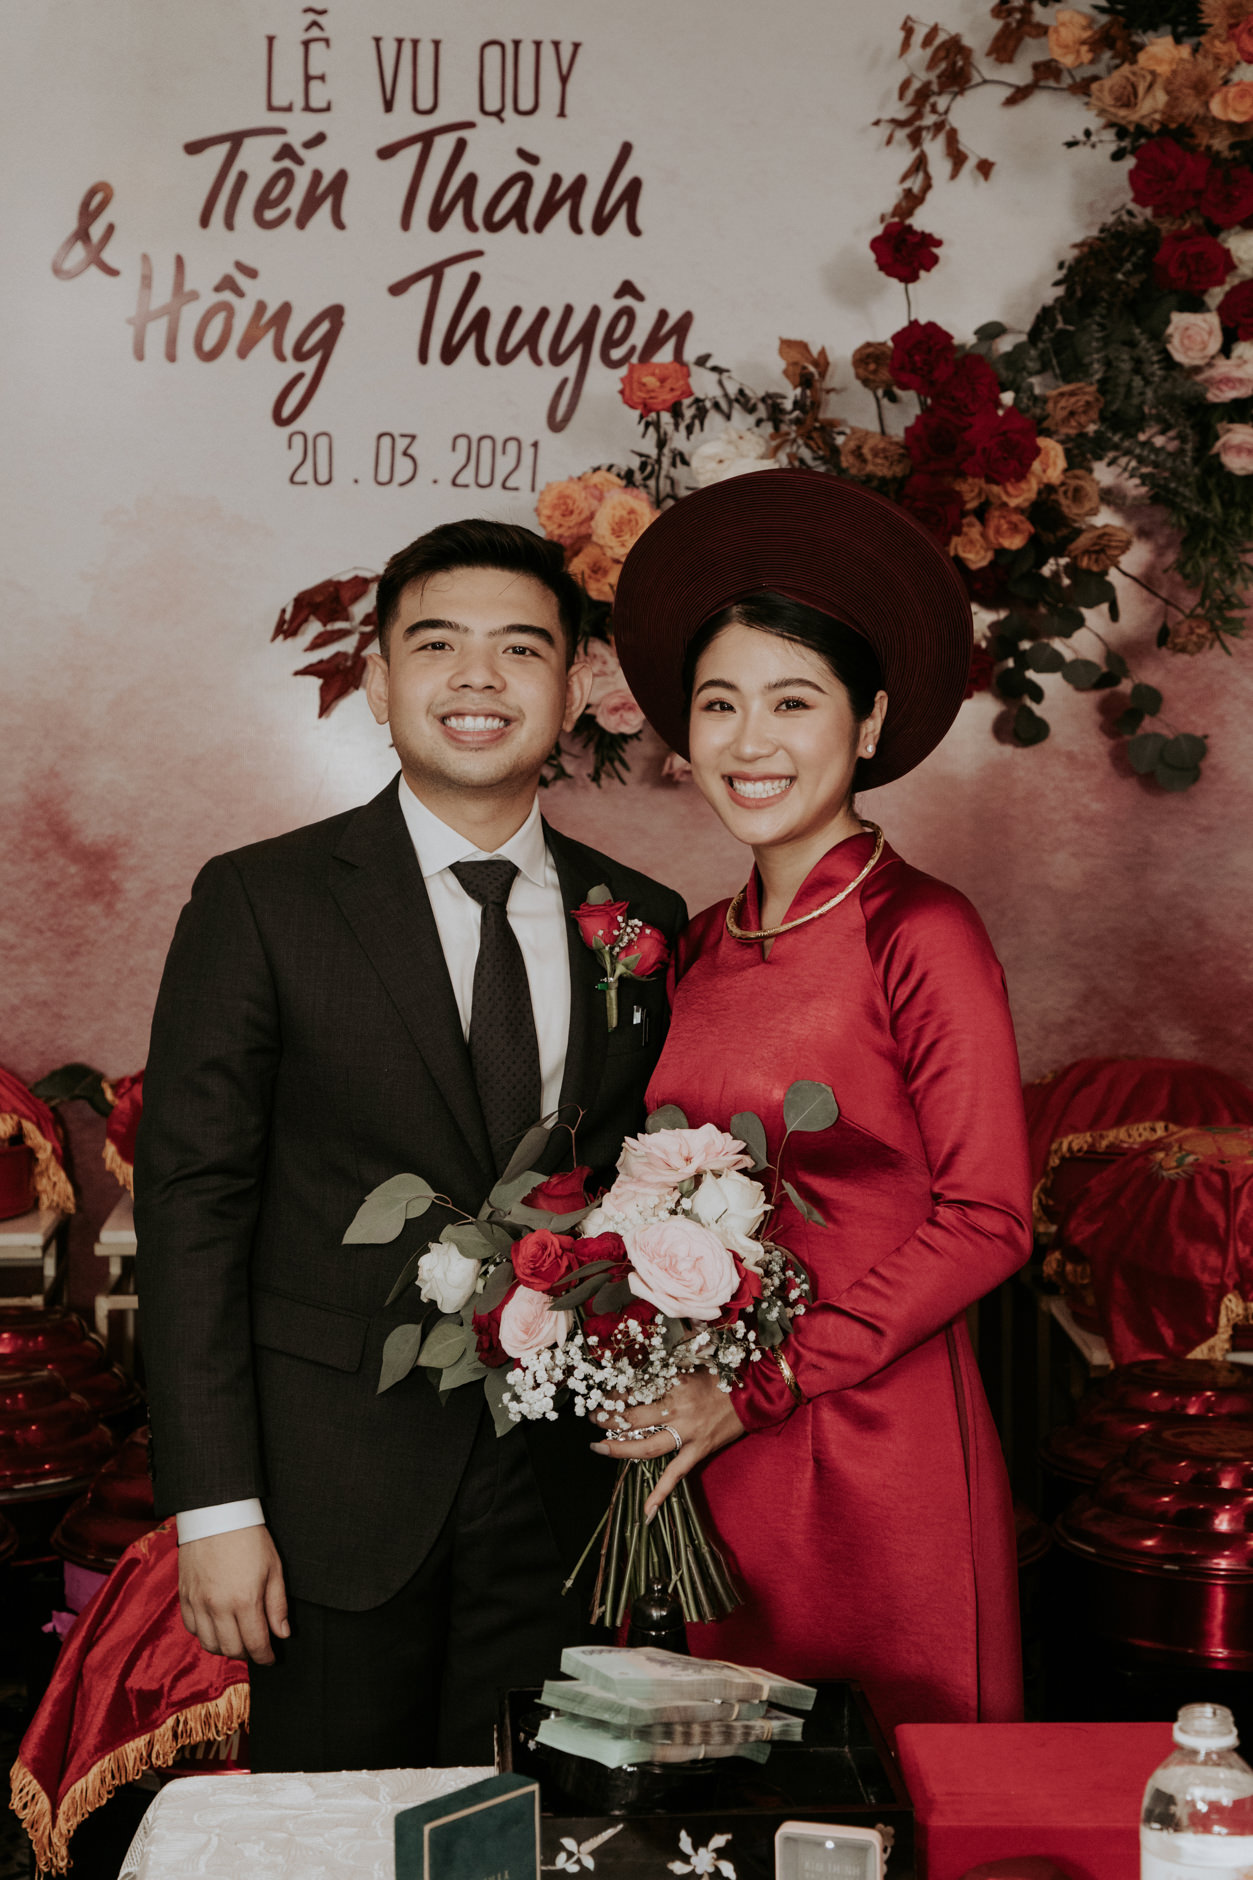 Thành & Thuyên // Chinese - Vietnamese Wedding - Thien Tong Photography ...